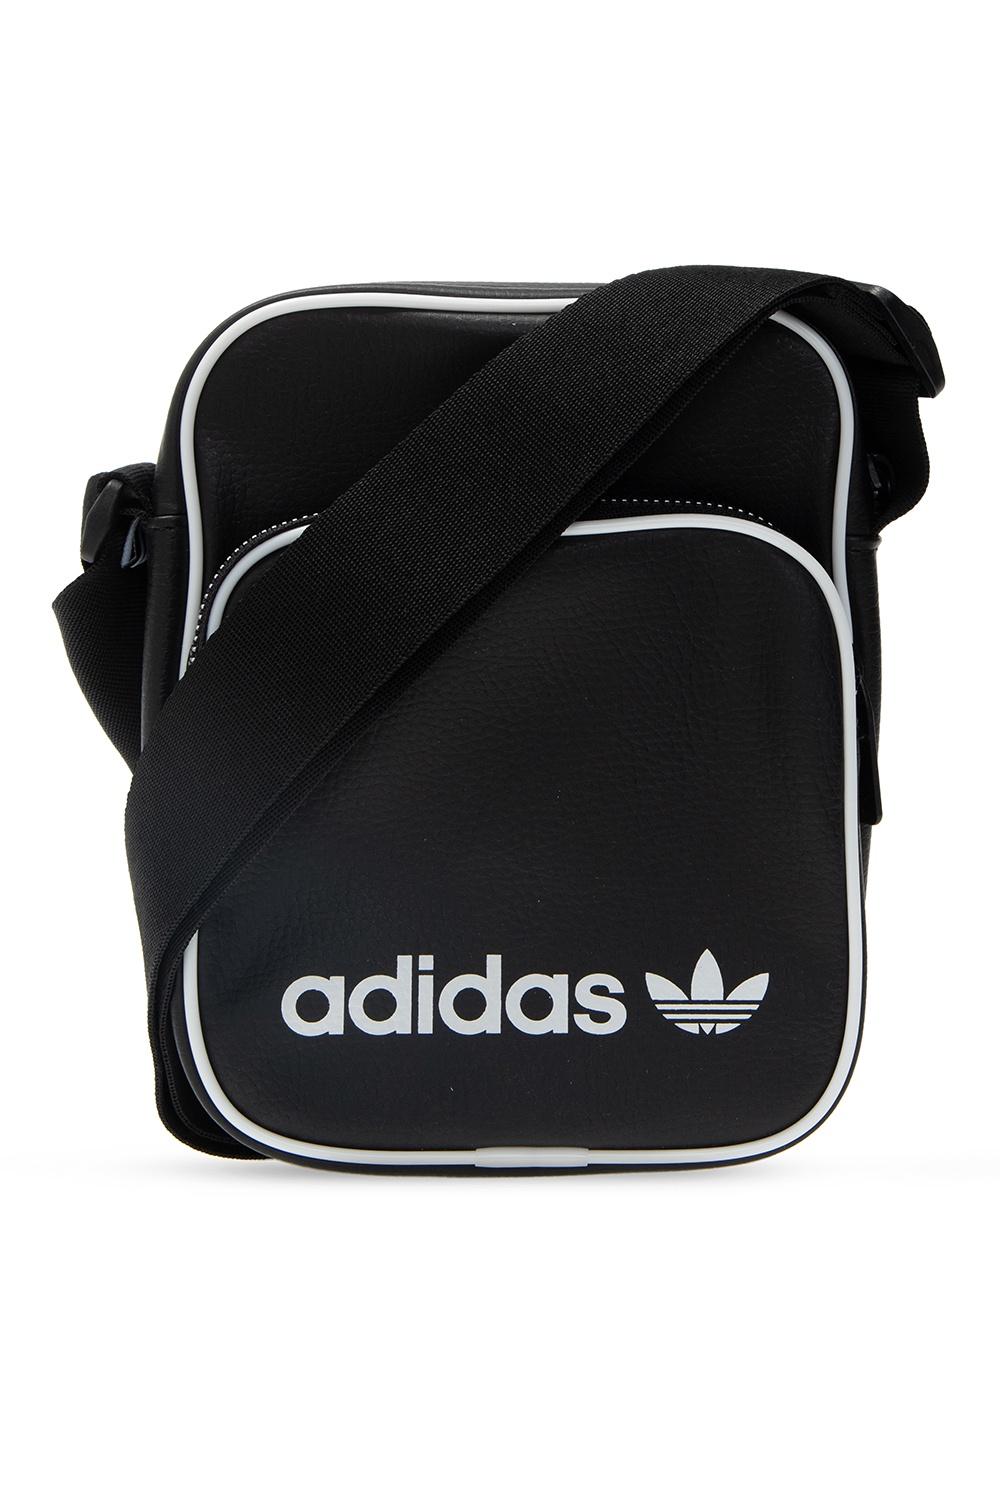 adidas Originals Shoulder Bag With Logo Black for Men - Lyst